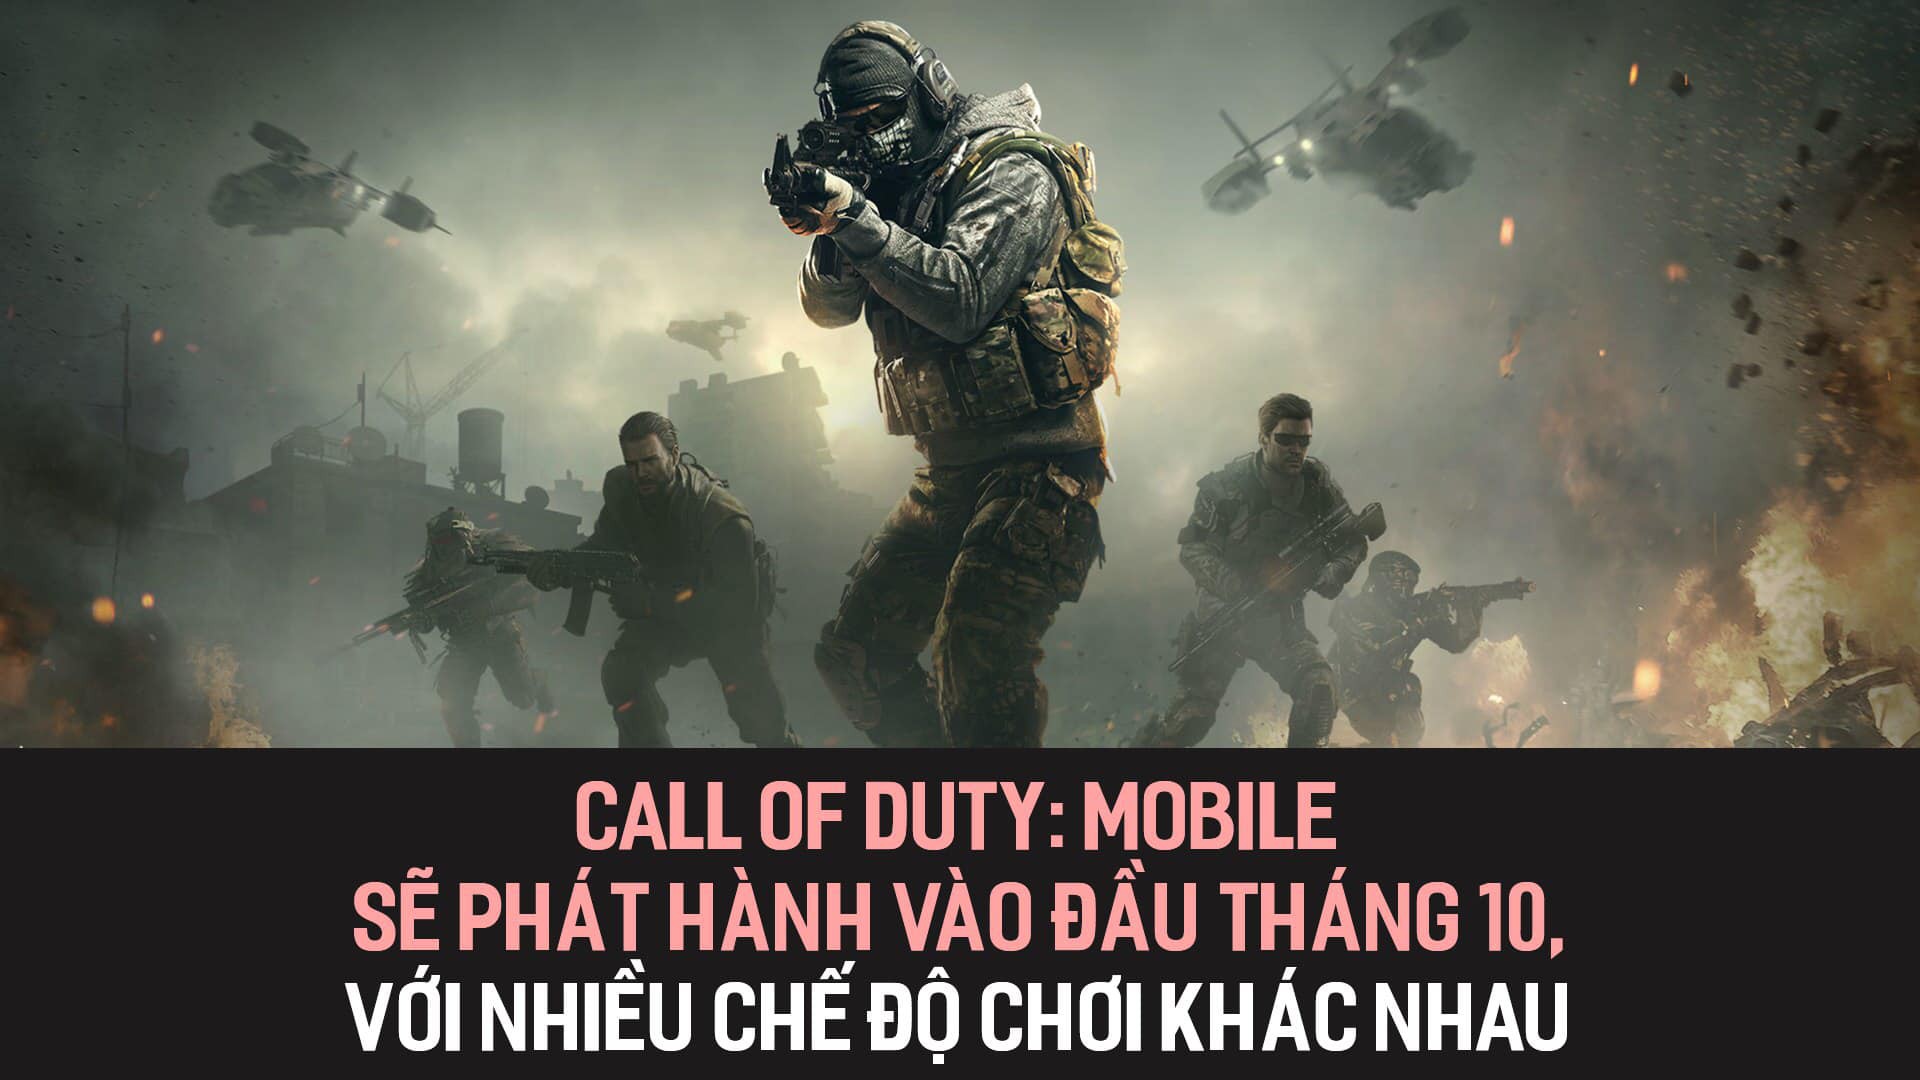 Call of Duty Mobile sẽ phát hành vào đầu tháng 10, với nhiều chế độ chơi khác nhau